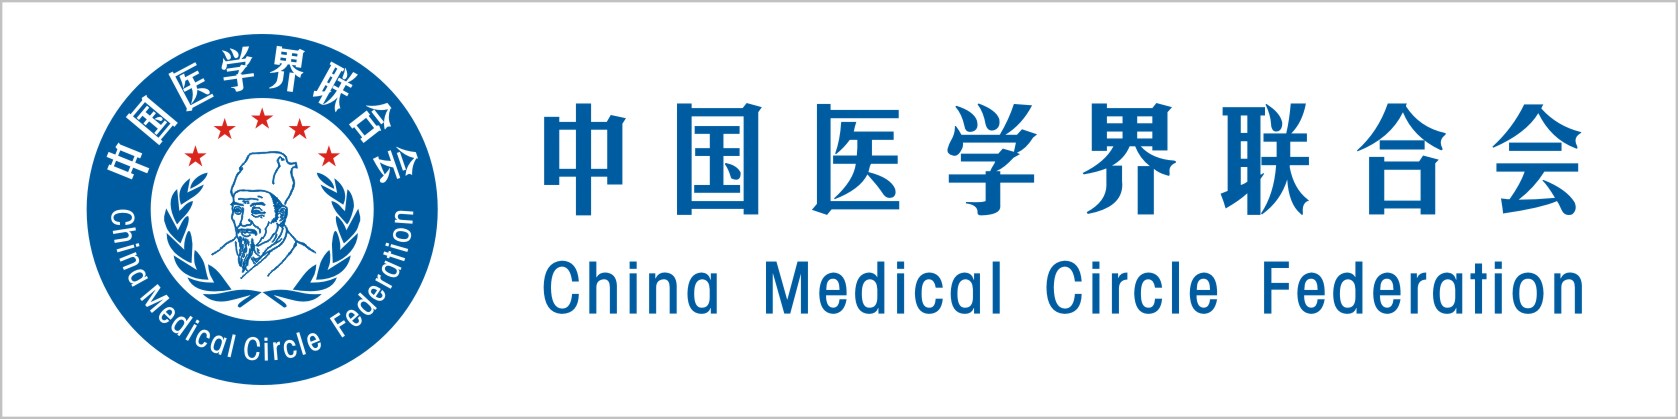 中國醫學界聯合會標識識別系統